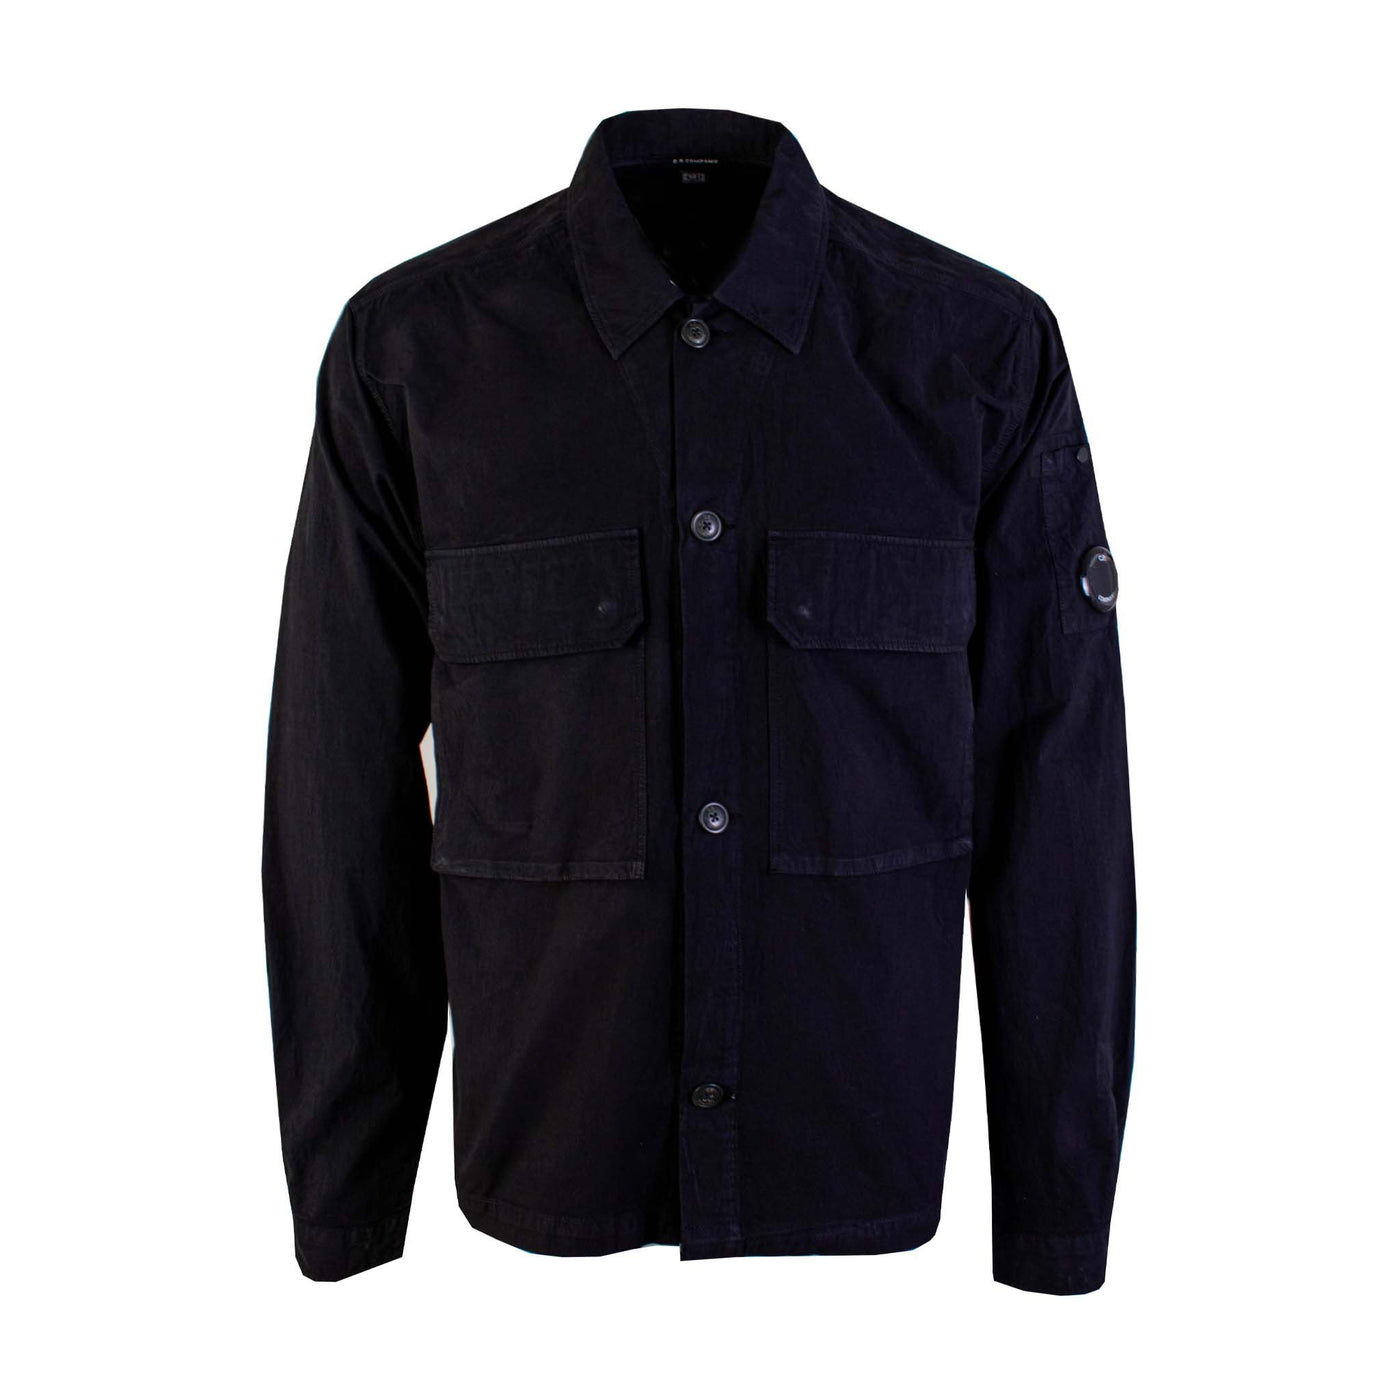 C.P. Company Black over Shirt with Maxi Pockets C.P. Company